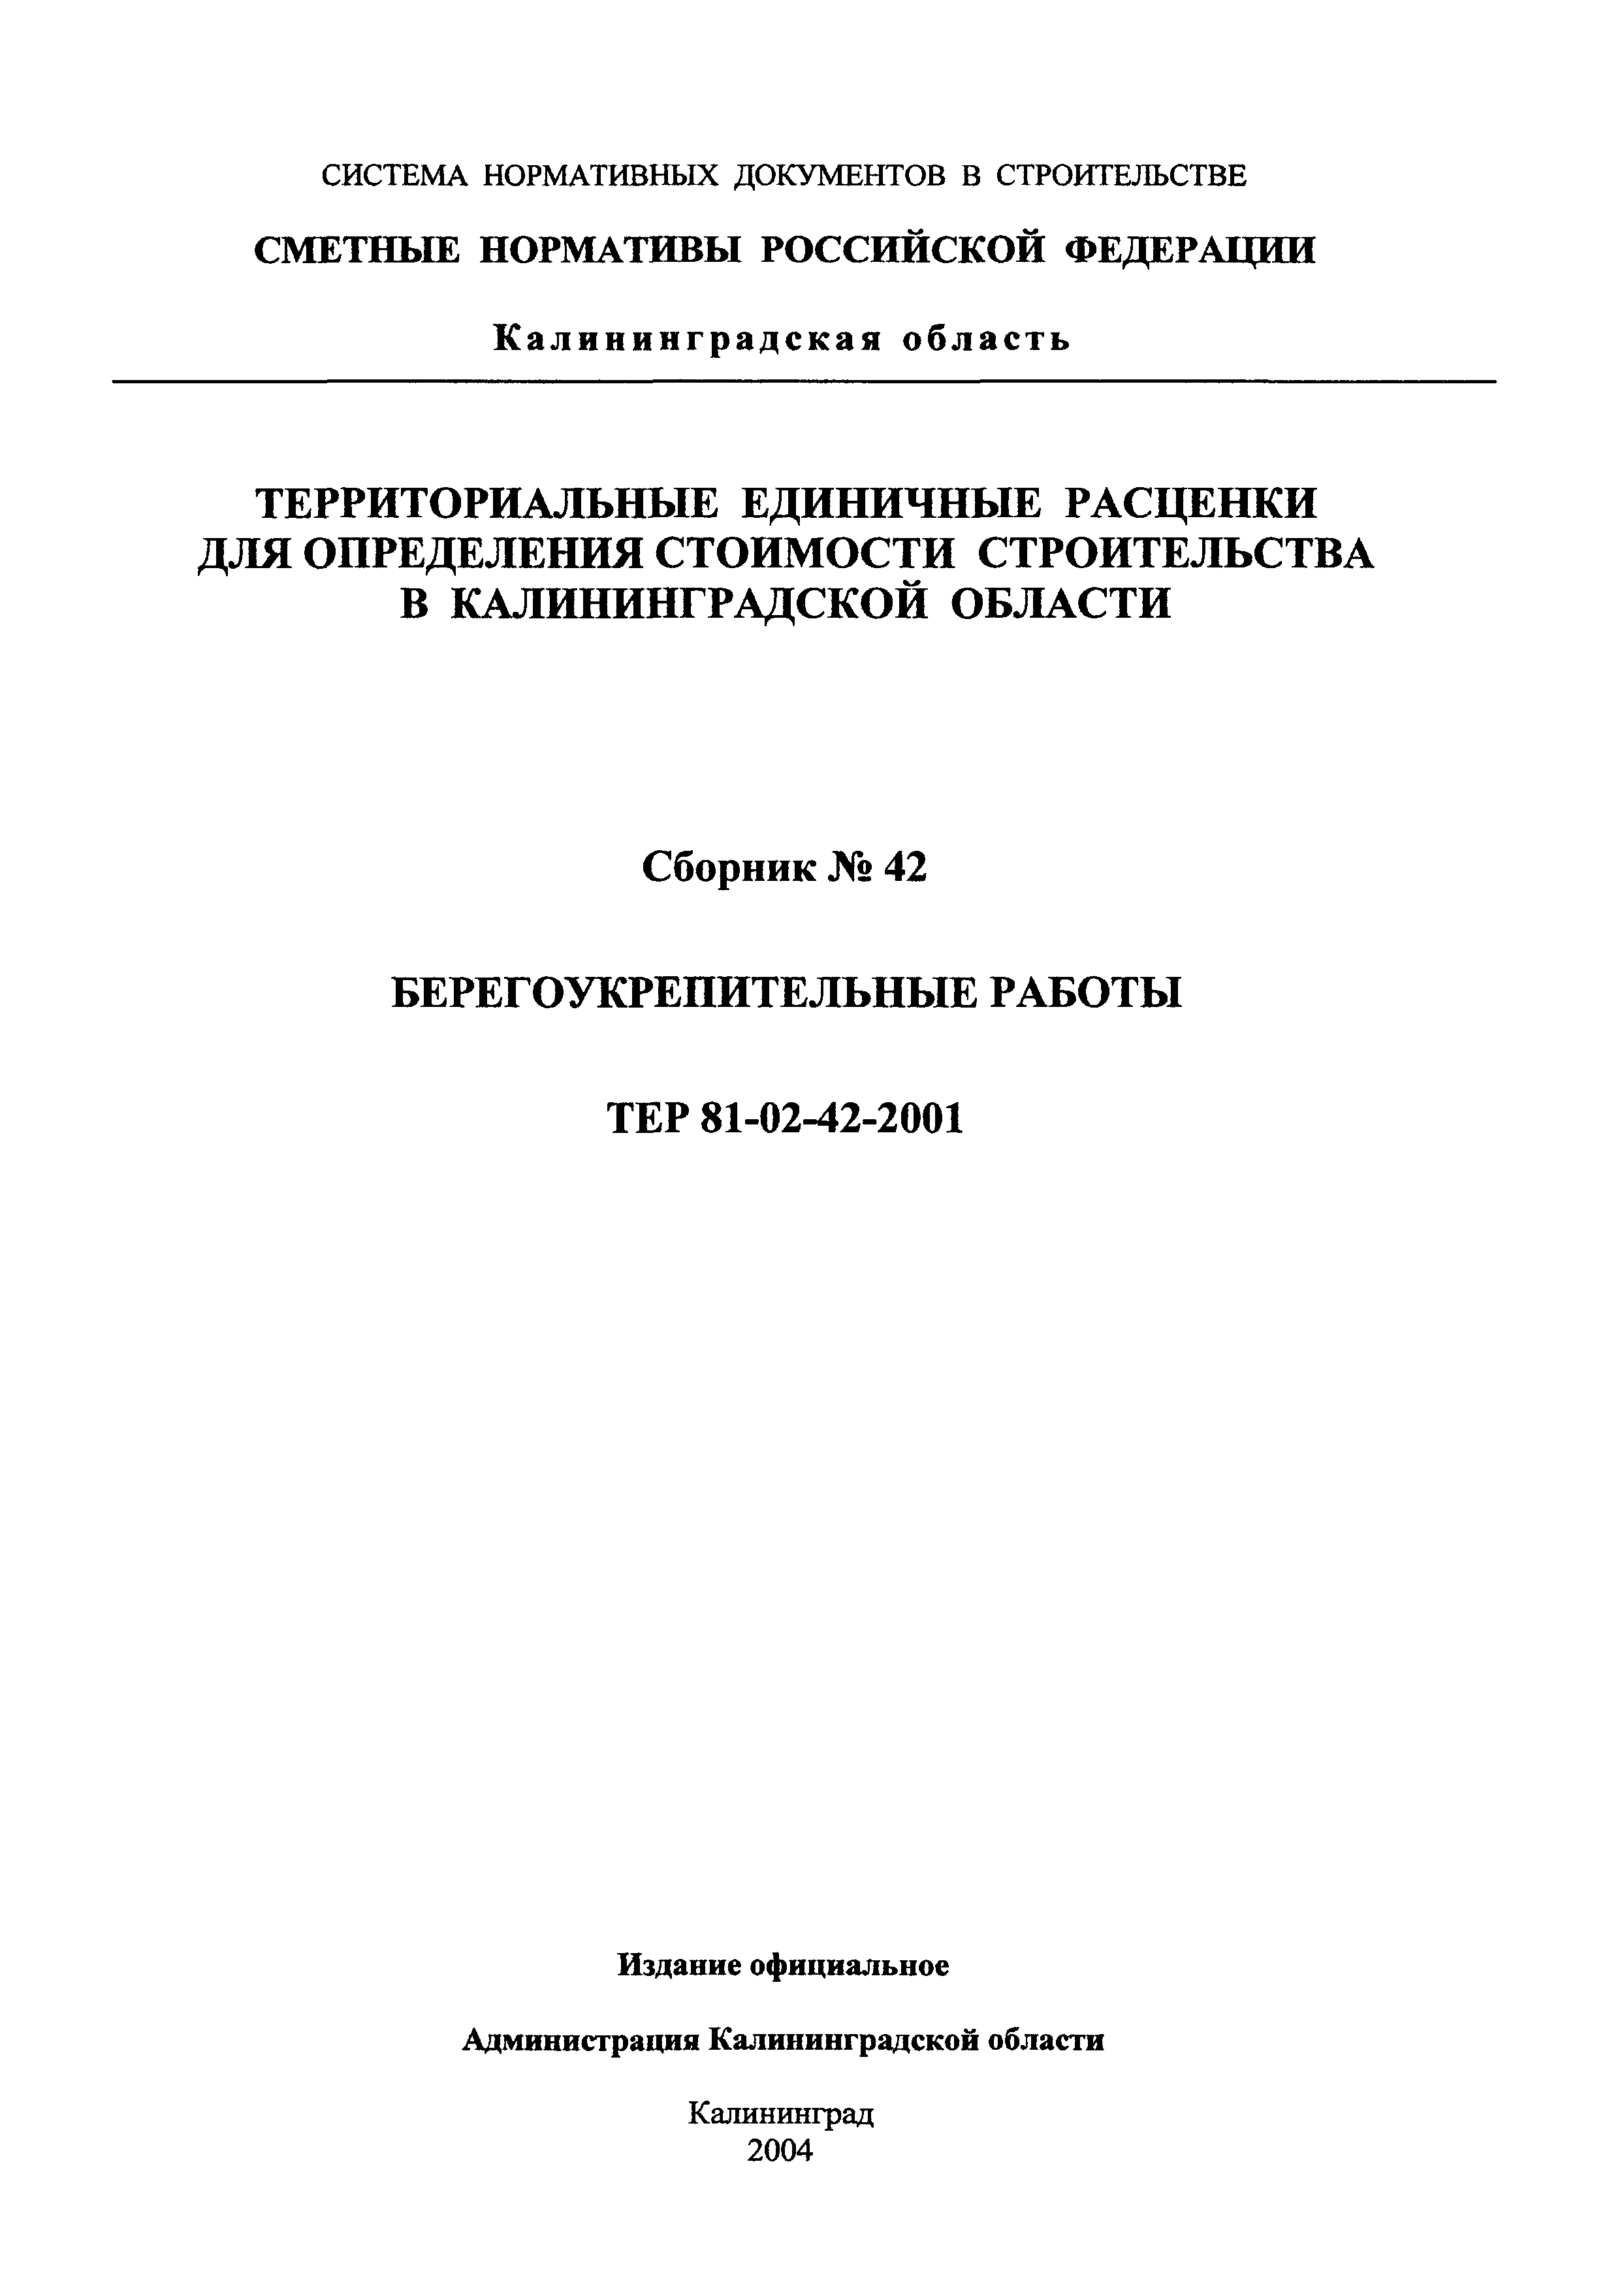 ТЕР Калининградская область 2001-42